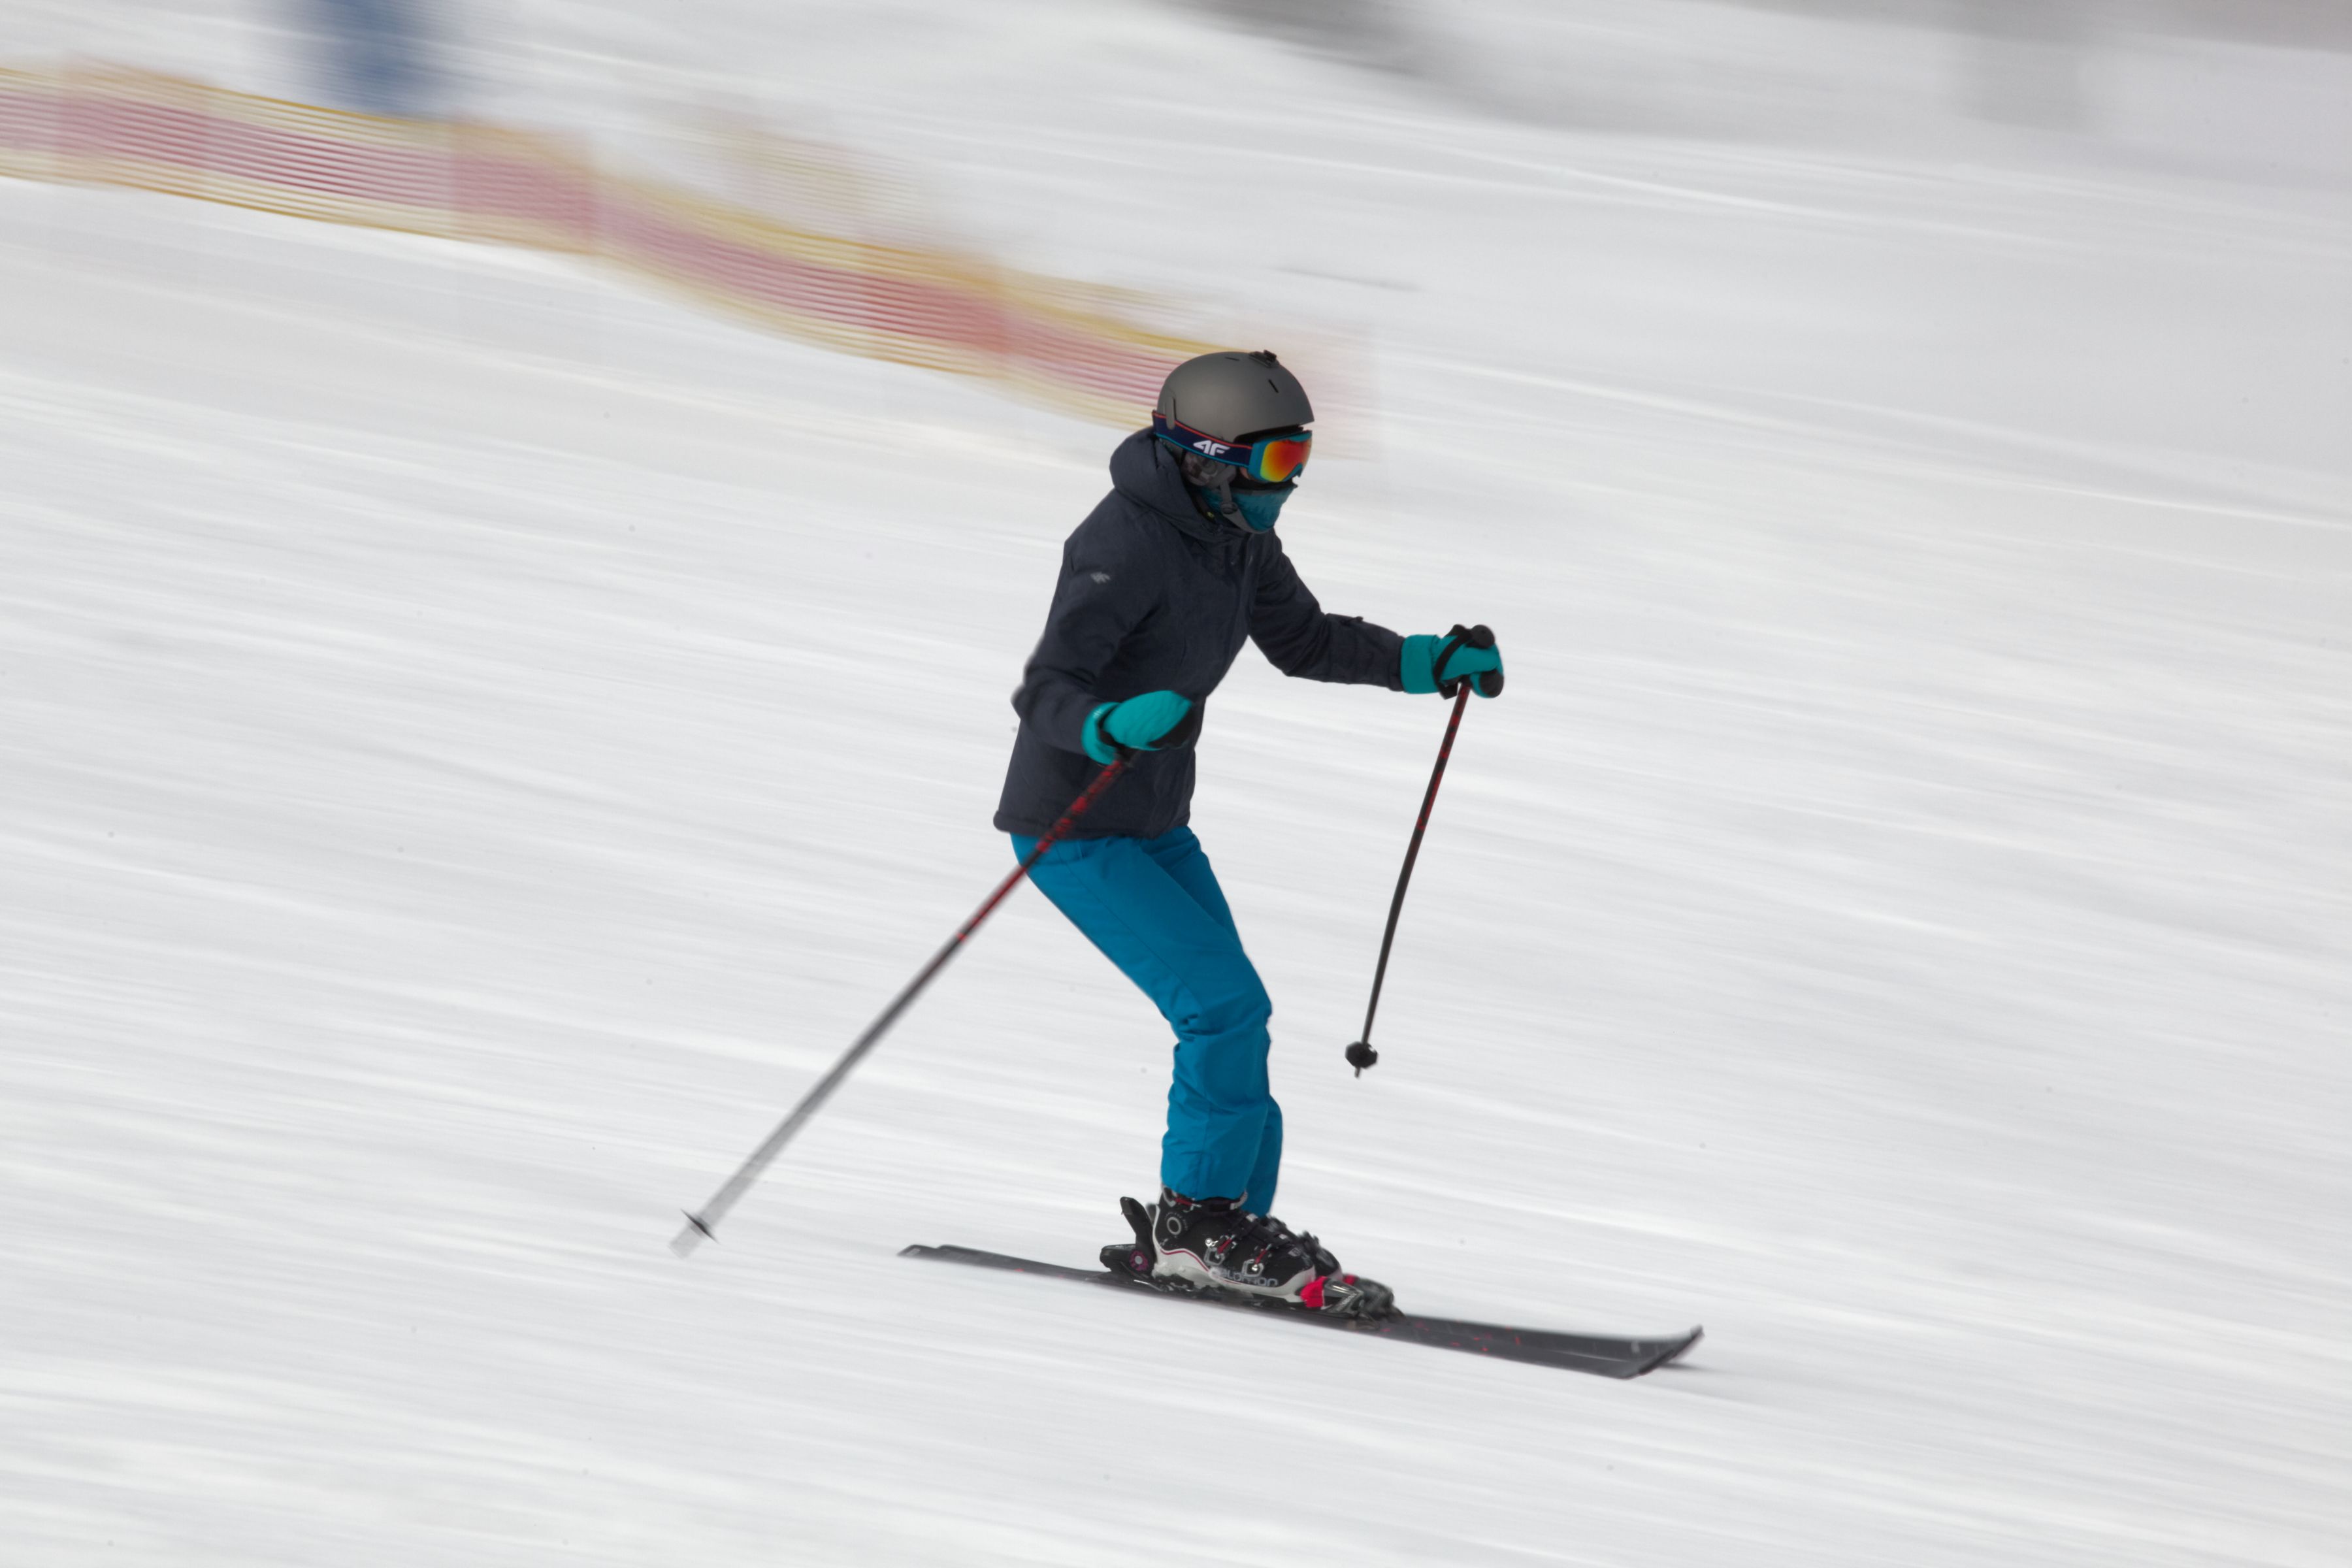 Weekendowy raport narciarski. Sprawdź, gdzie warto się wybrać [WARUNKI]